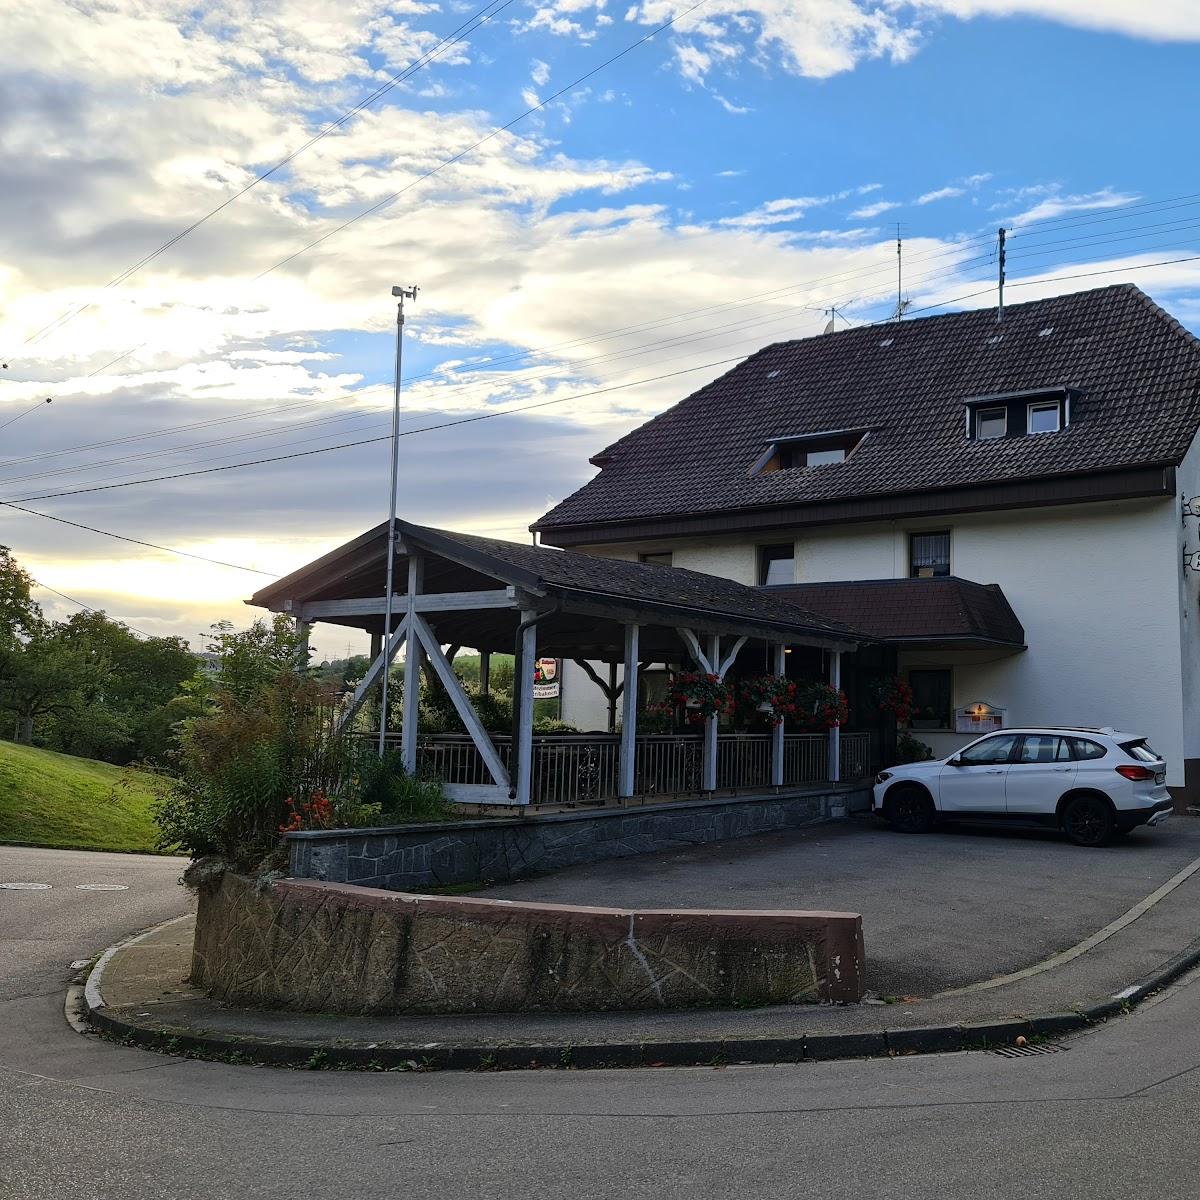 Restaurant "Gasthof Zum Hirschen - Elke Weisser" in Ühlingen-Birkendorf